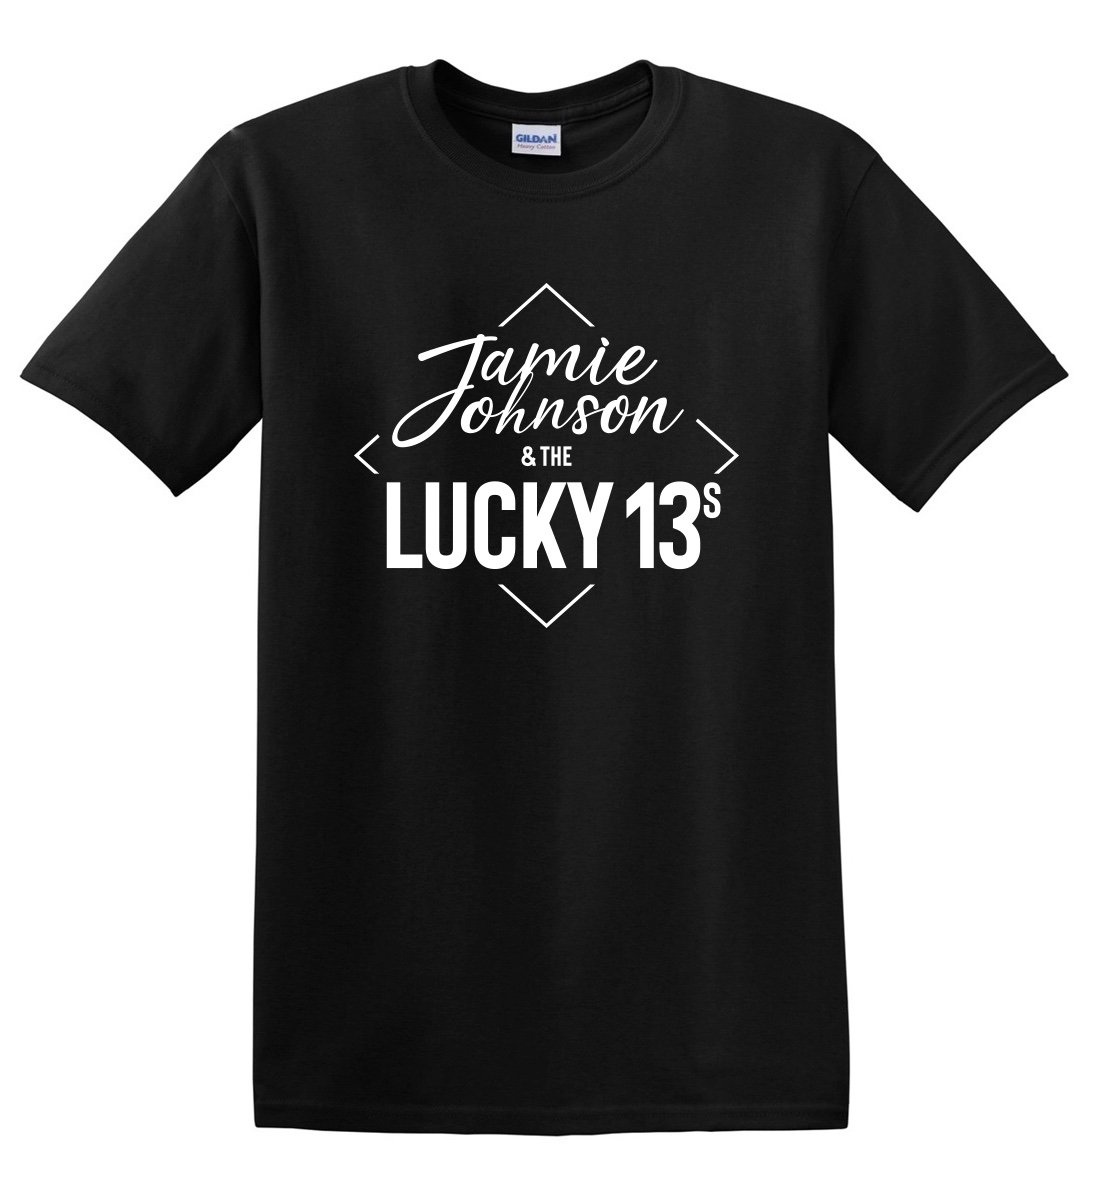 The Lucky 13s T Shirt